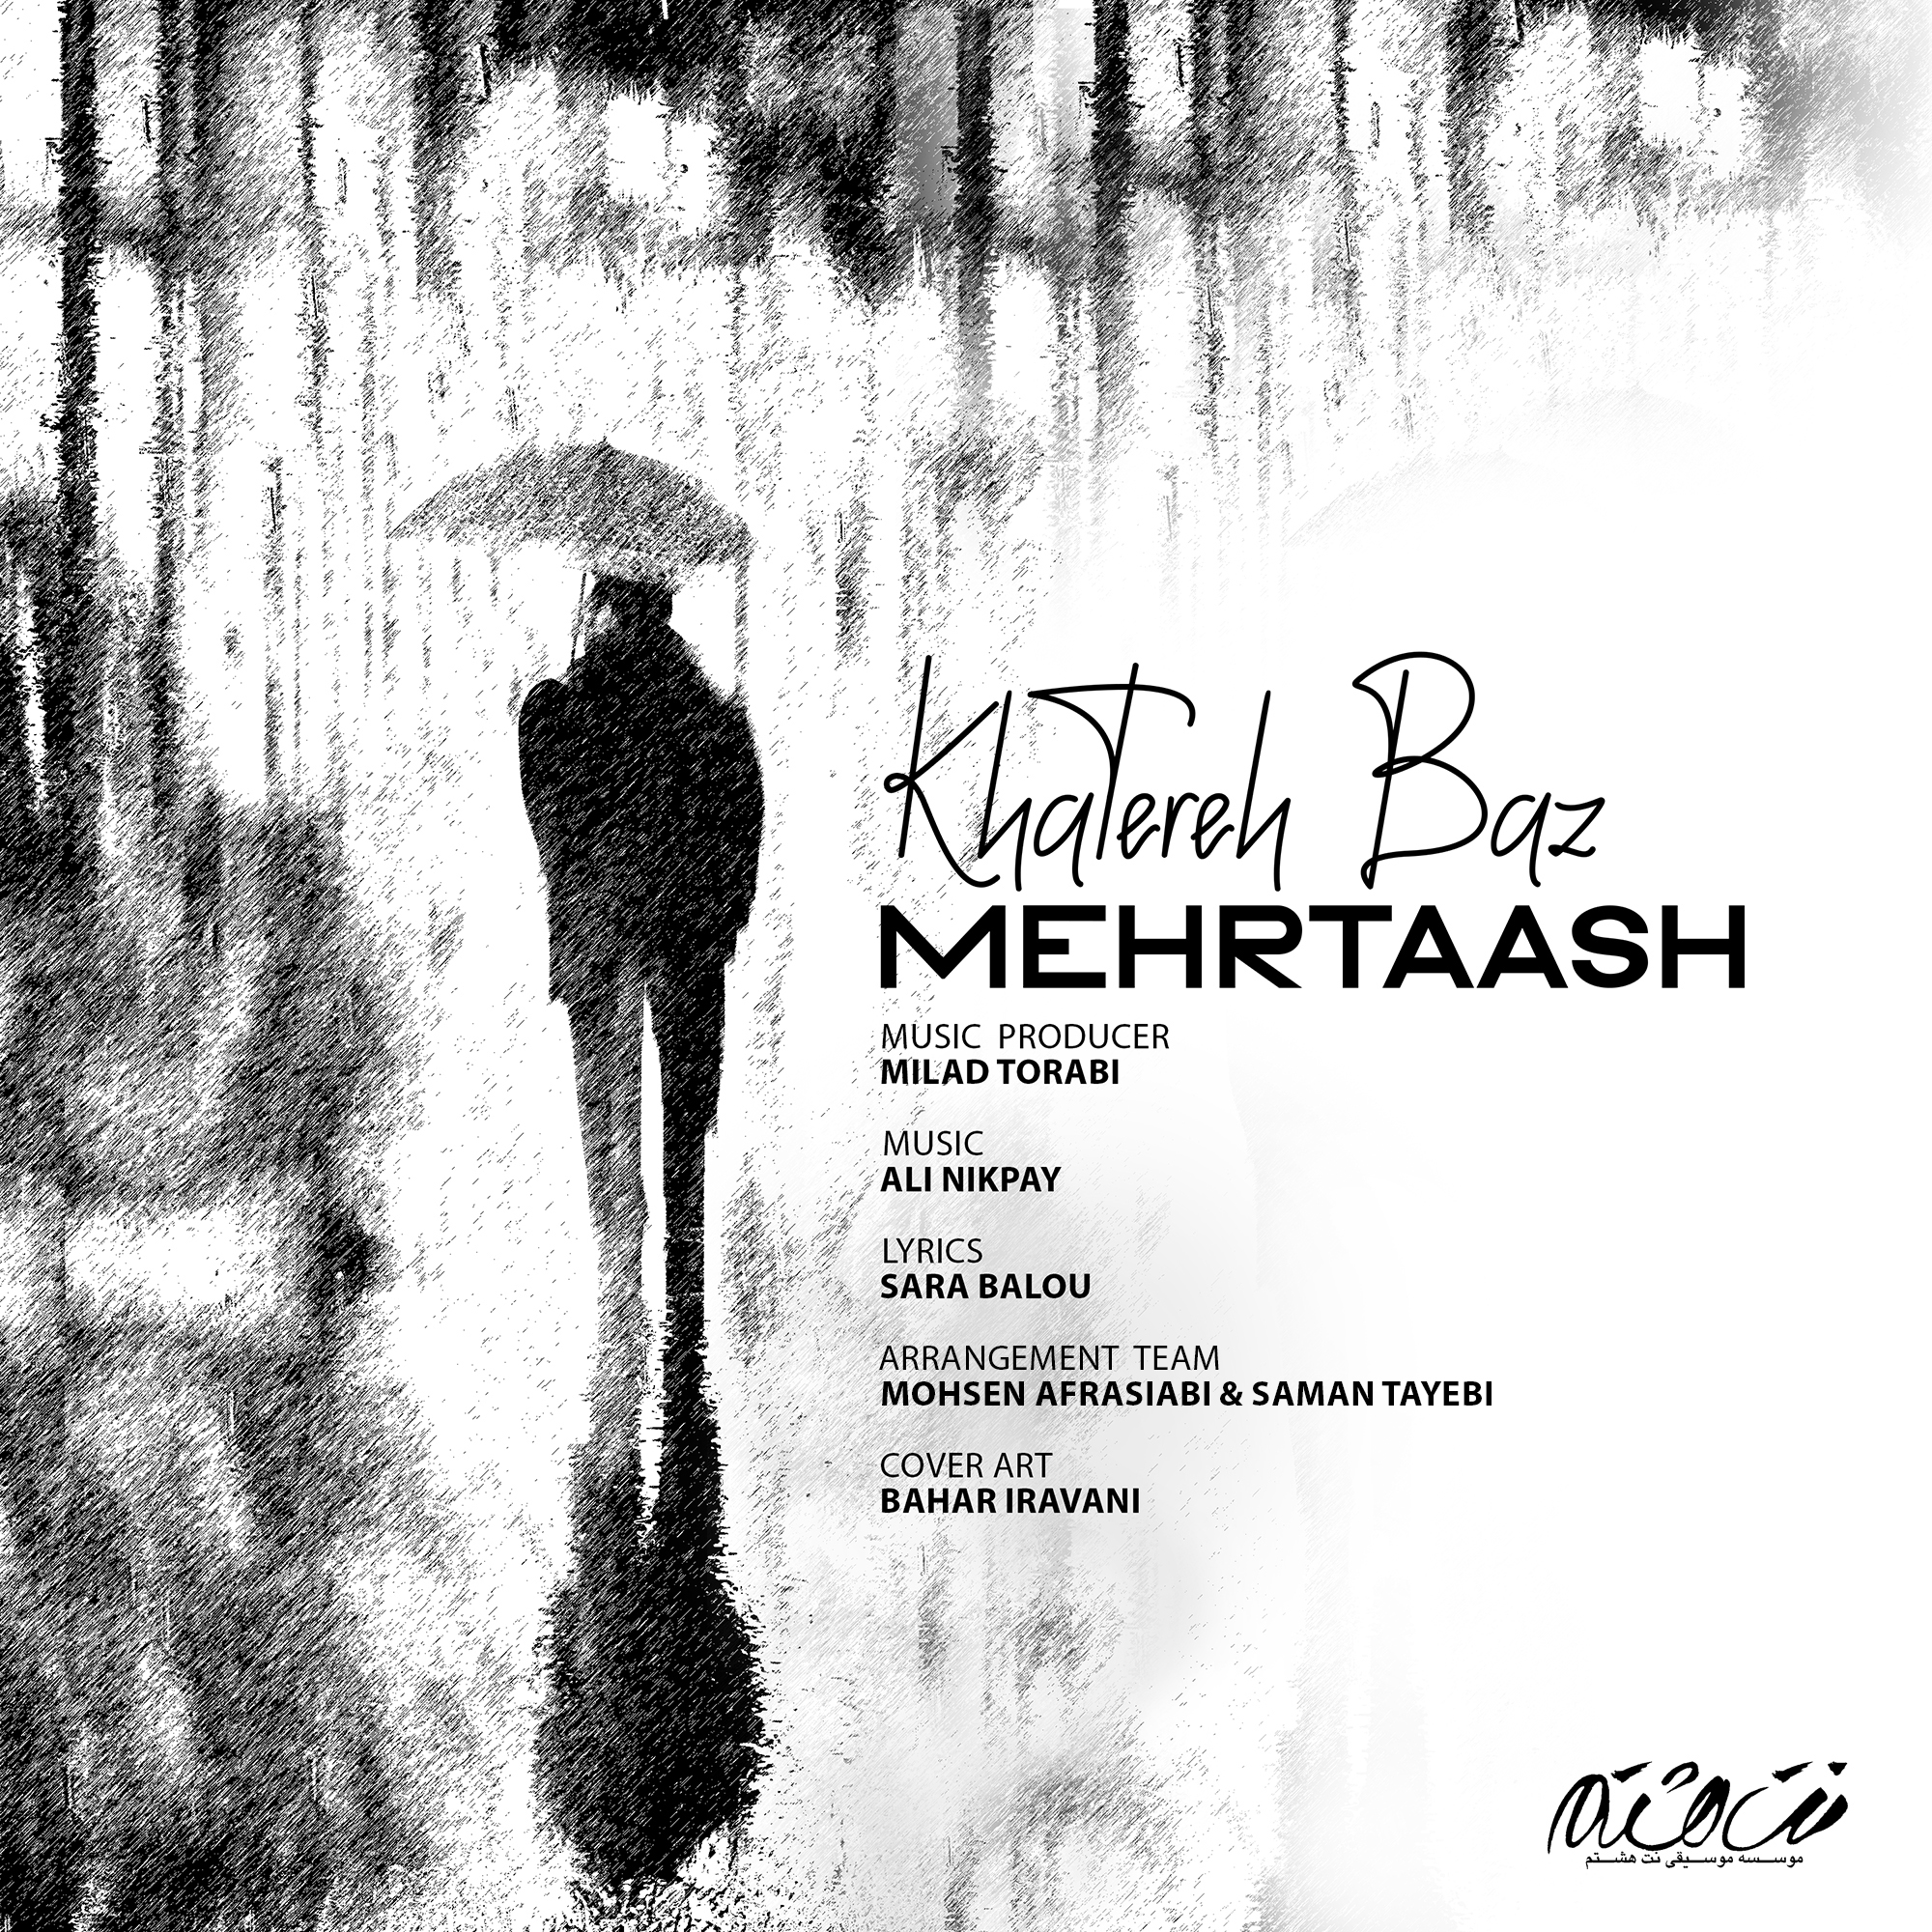  دانلود آهنگ جدید مهرتاش - خاطره باز | Download New Music By Khatereh Baz - Mehrtaash